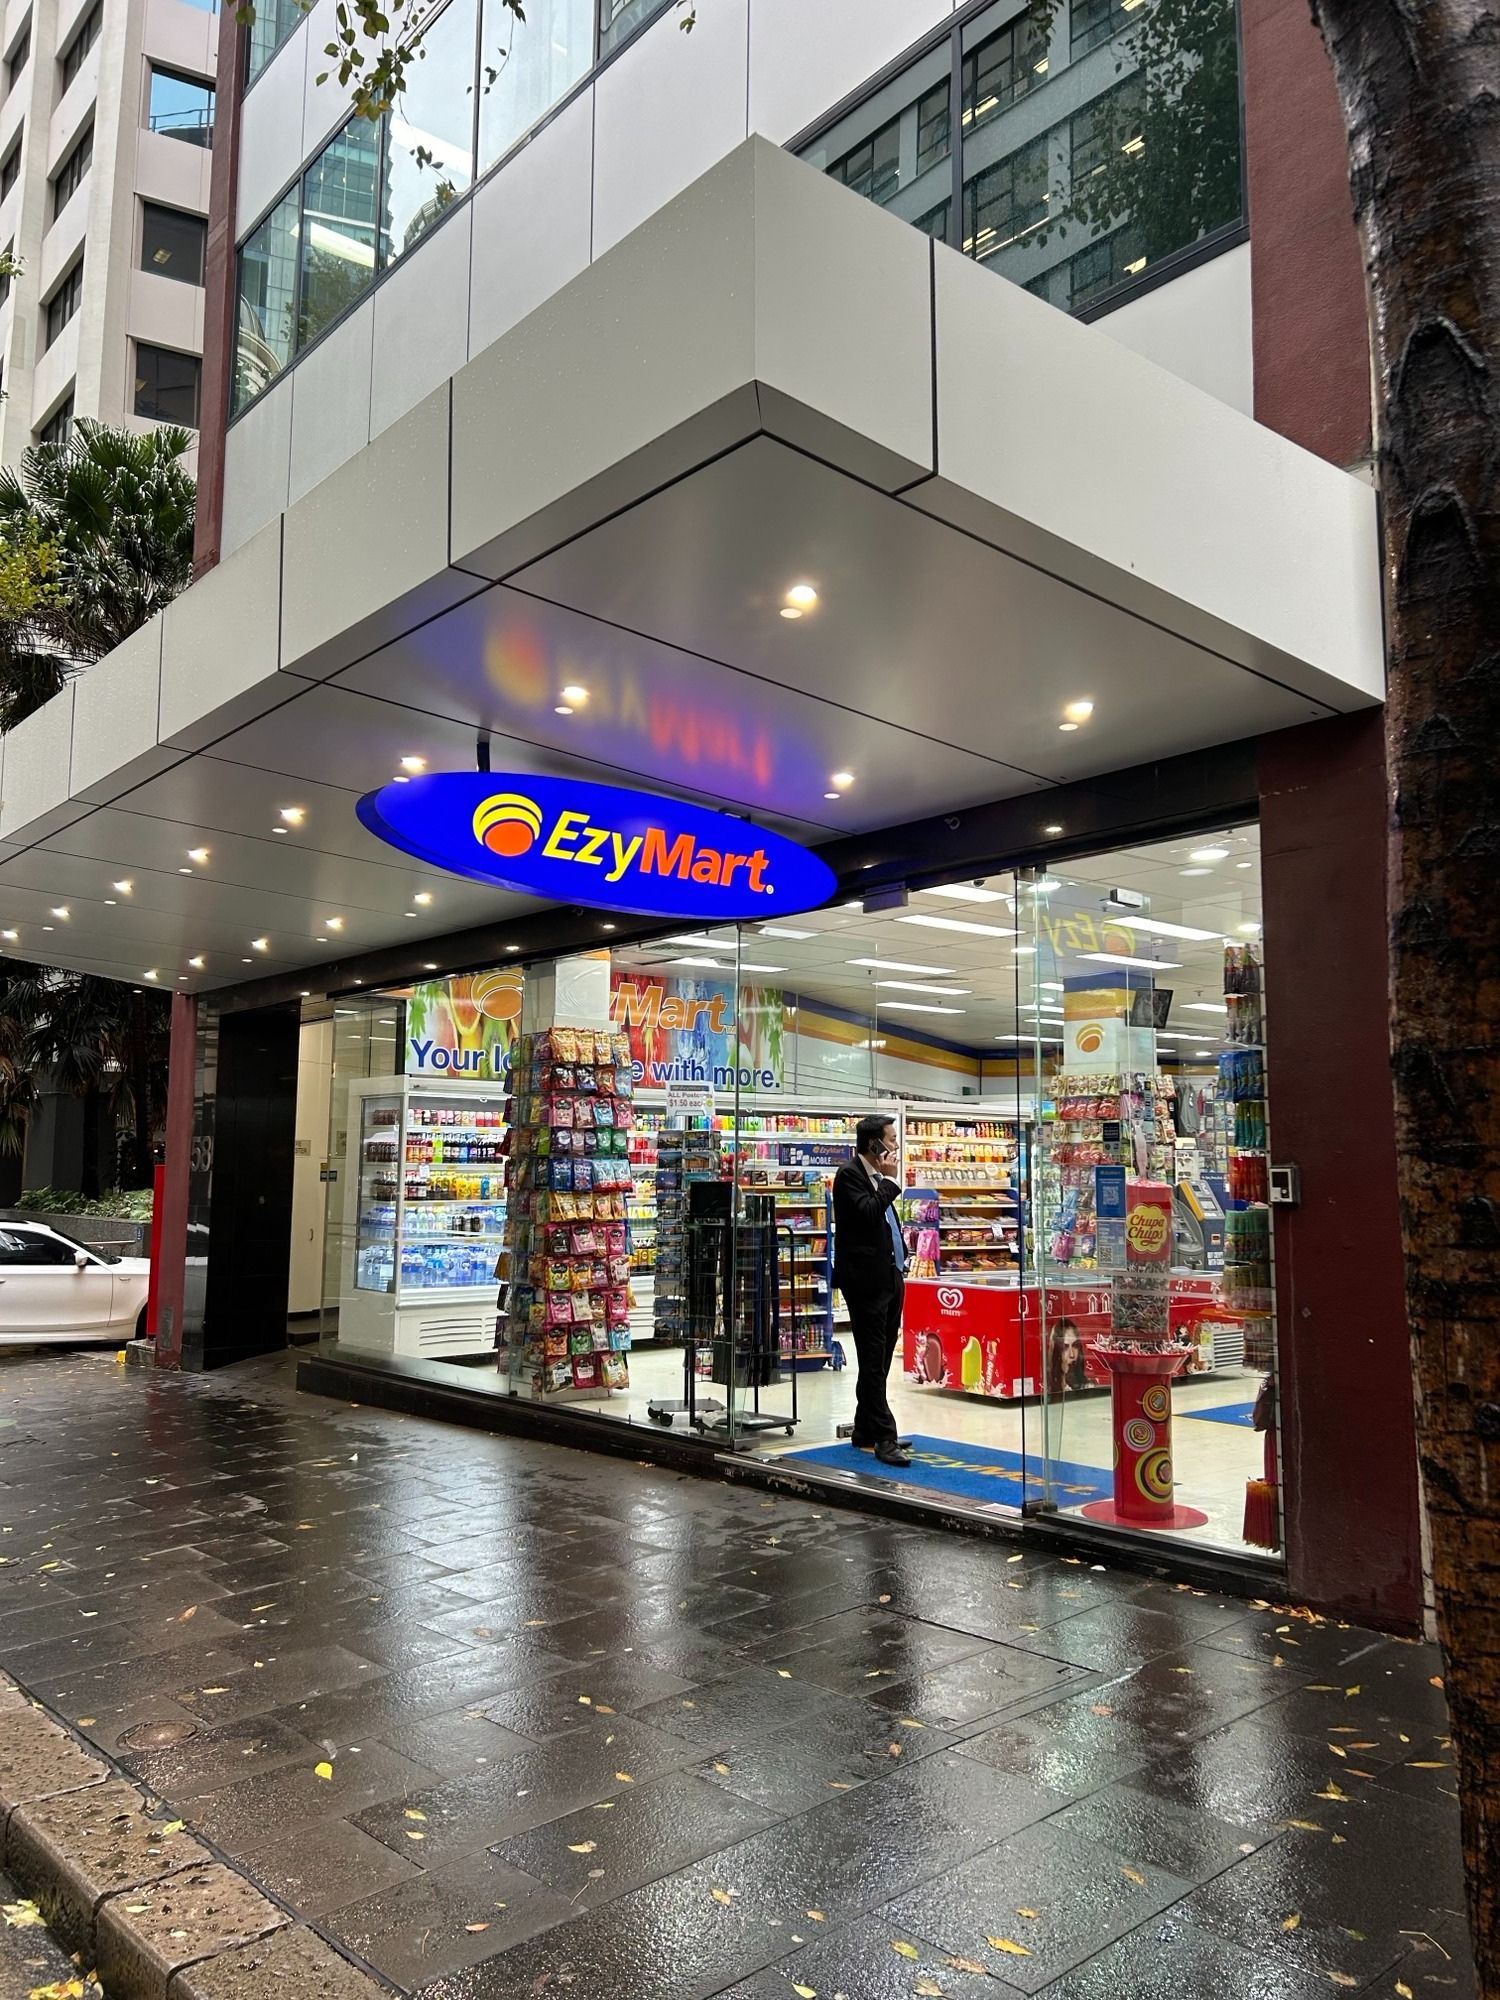 CoinFlip Bitcoin ATM - EzyMart Pitt Street (Sydney) Sydney (13) 0068 9526